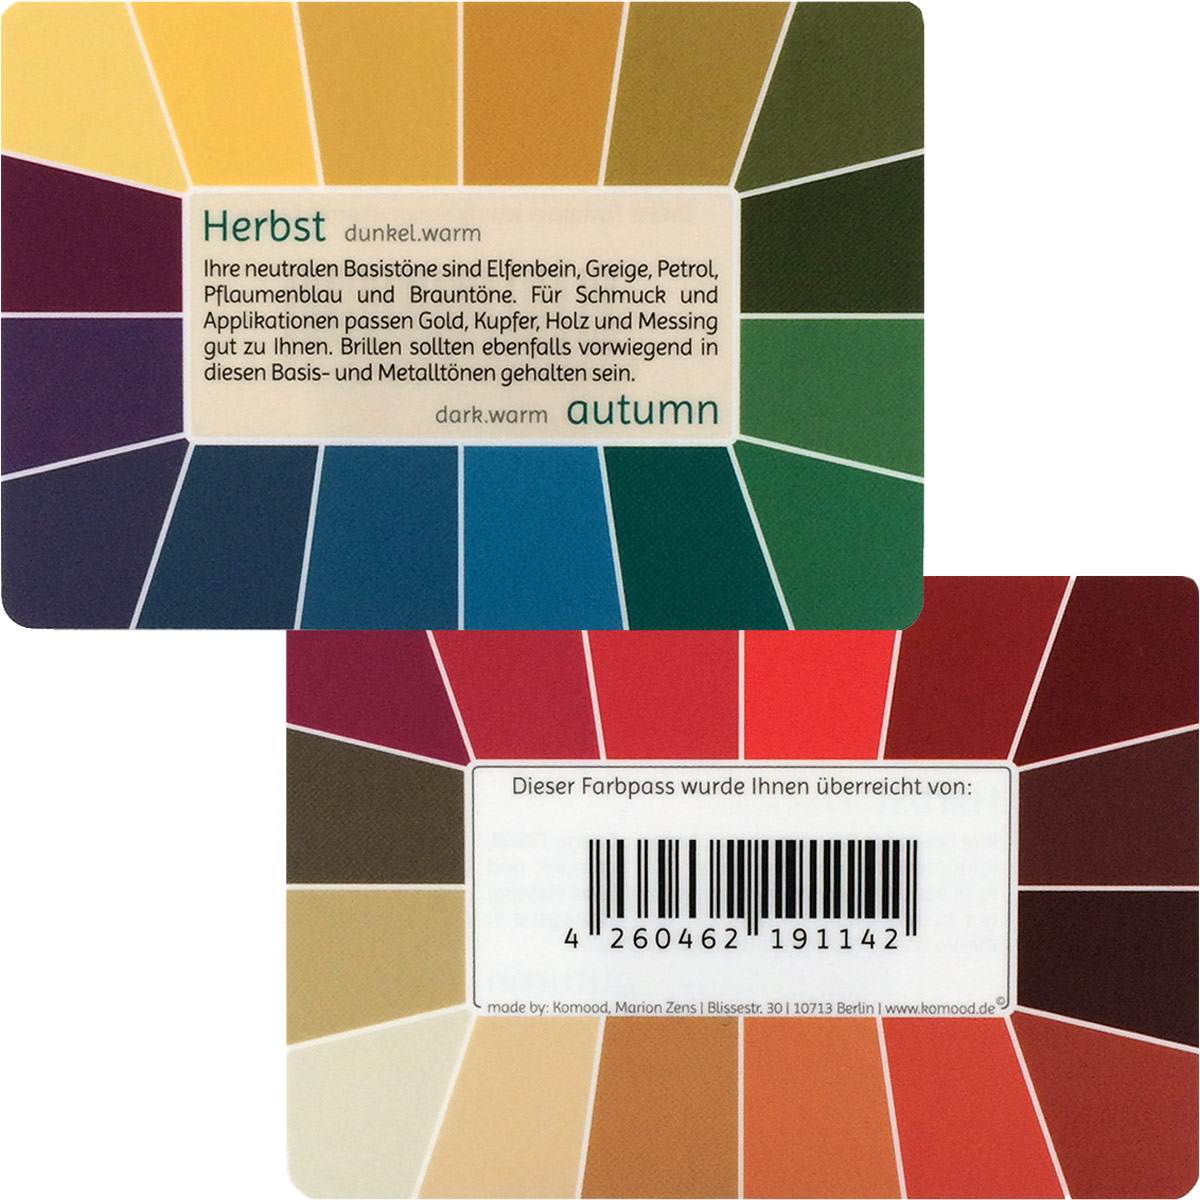 Farbpass Herbst - Memo, 32 Farben